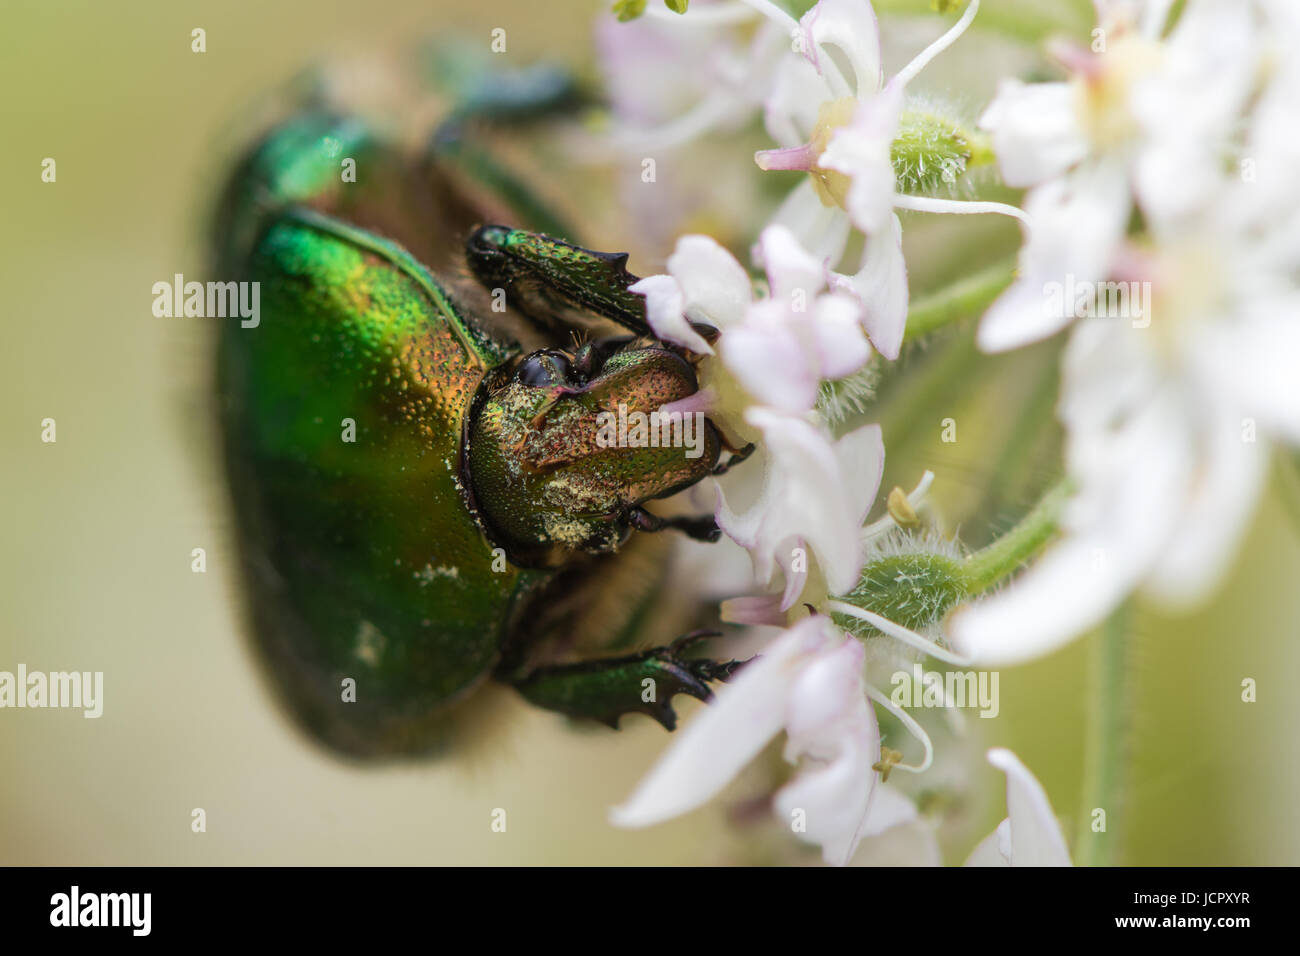 Rose chafer (Cetonia aurata) alimentándose de hogweed (Heracleum sphondylium). Gran escarabajo verde en la familia Scarabaeidae muestra el detalle de los ojos compuestos Foto de stock